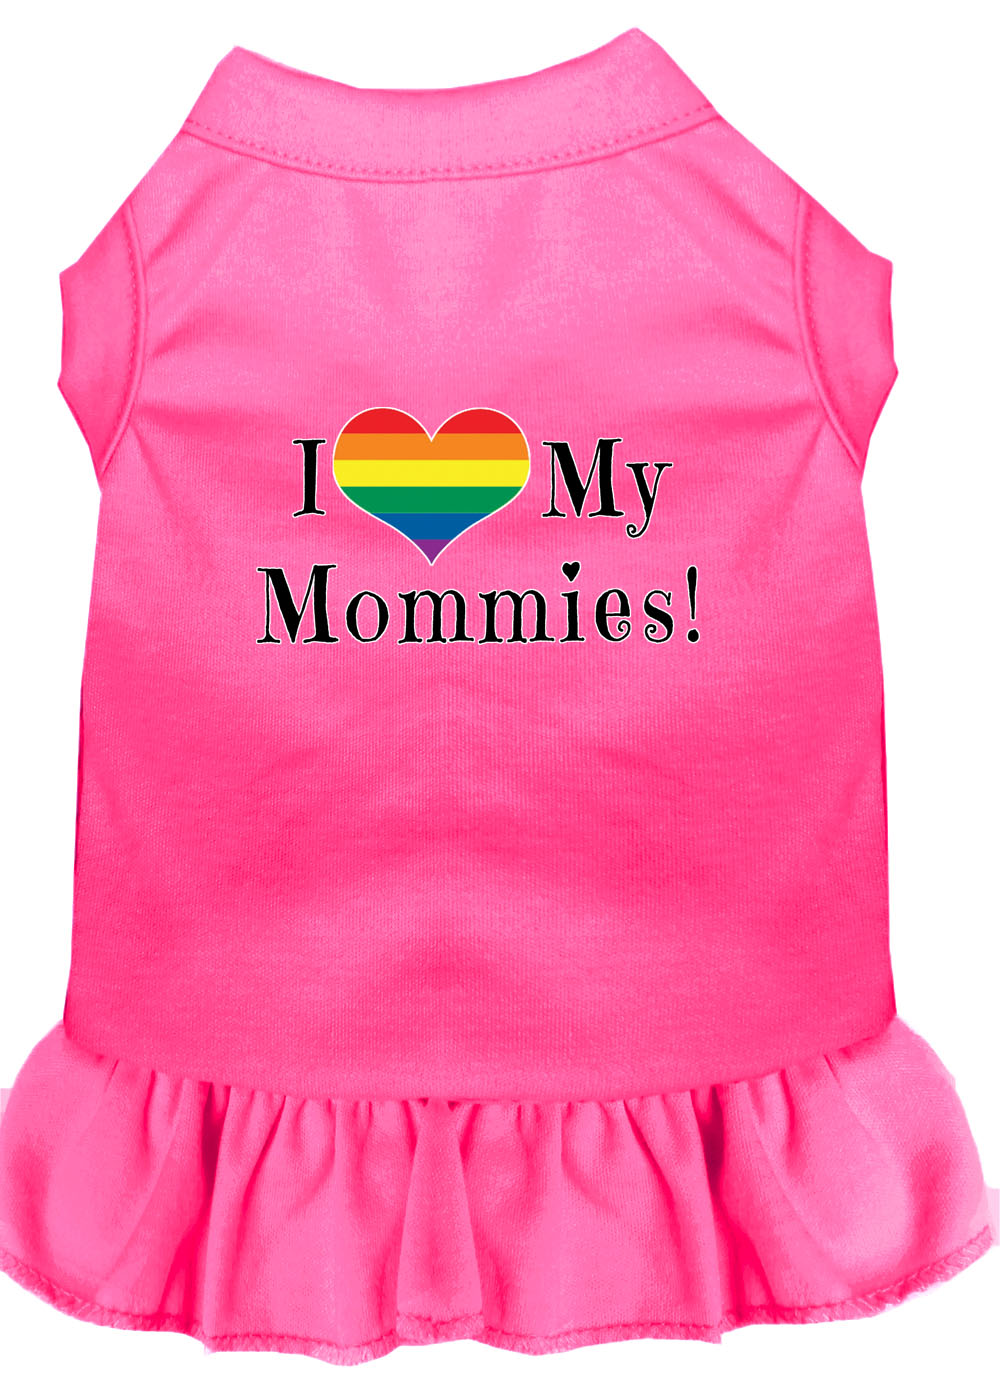 I Heart my Mommies Screen Print Dog Dress Bright Pink XXXL